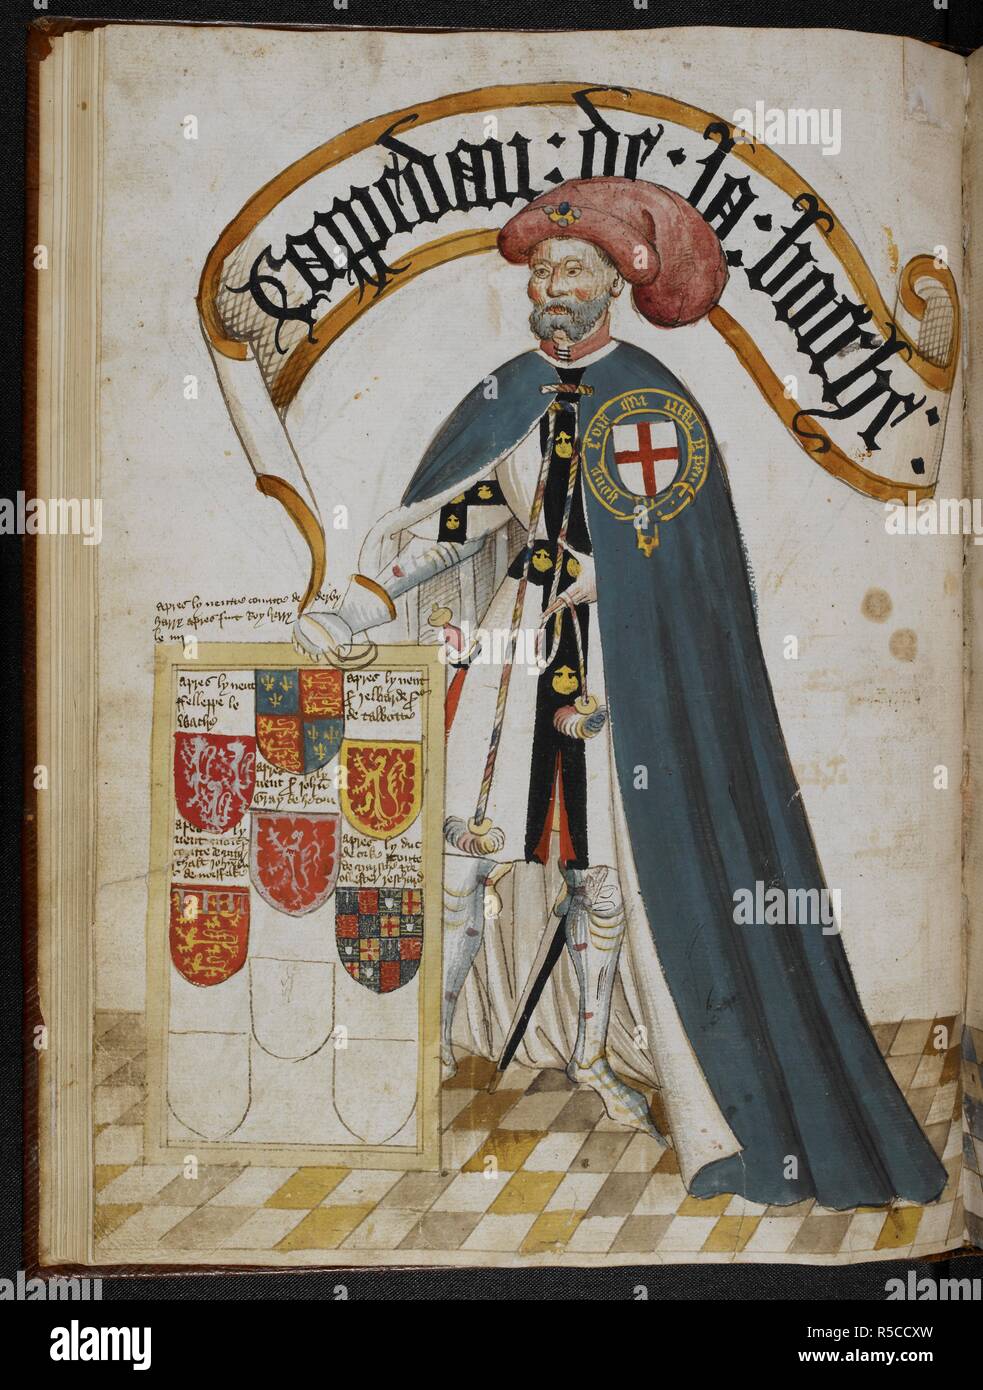 Sir John de Grailly, captal de Buch, fondateur d'un Chevalier de l'ordre de  la Jarretière, le port d'un porte-jarretelles bleu manteau sur l'armure de  plaque et surcoat afficher ses bras. Livre illustré